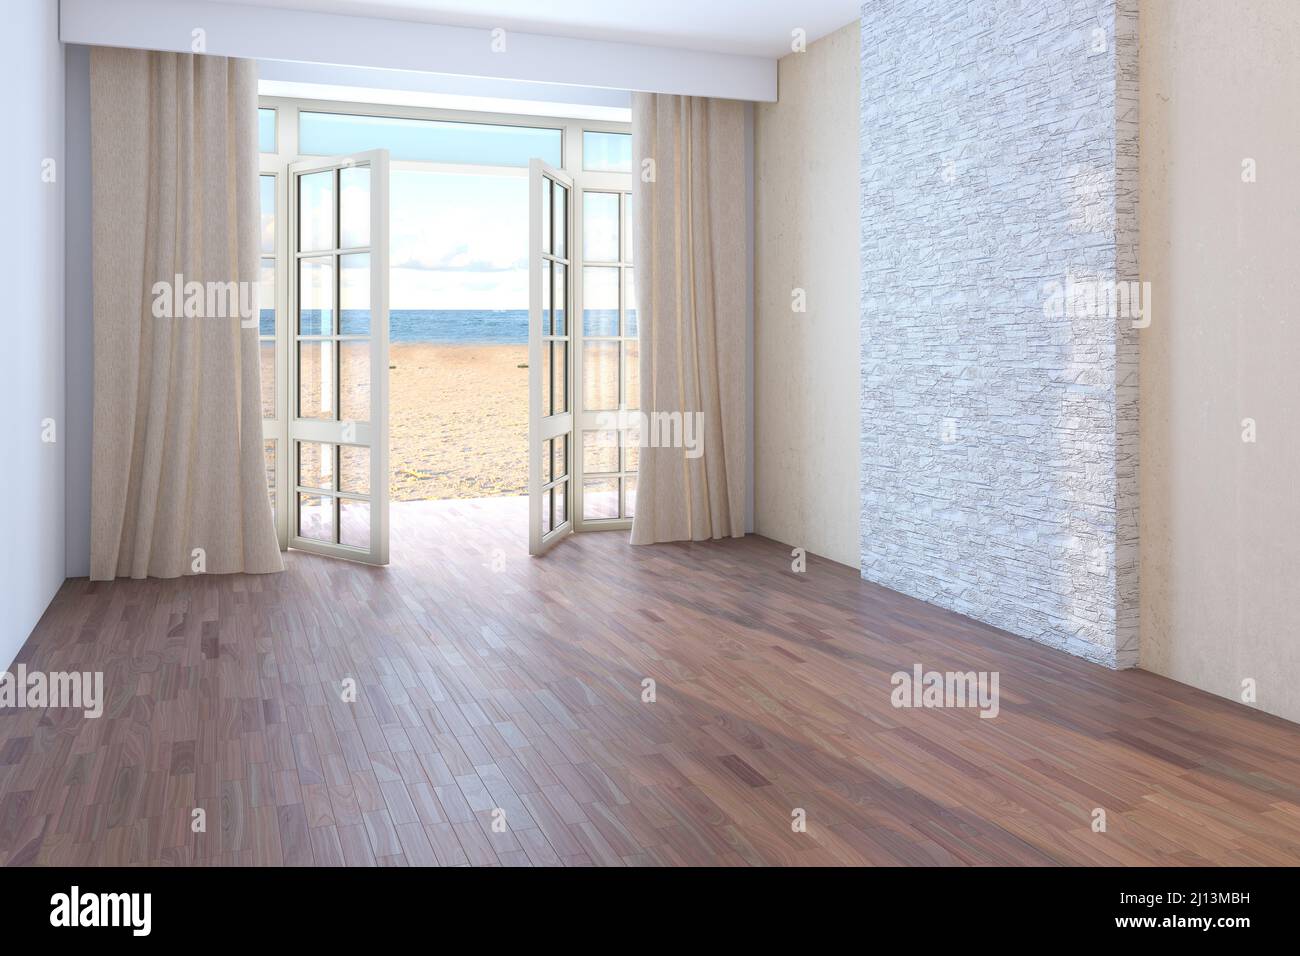 Hôtel avec vue sur la mer. Chambre vide avec fenêtres ouvertes donnant sur l'océan, le sable jaune et les nuages. Parquet foncé, rideaux beige et mur en stuc beige avec briques. 3D rendu, 8K Ultra HD Banque D'Images